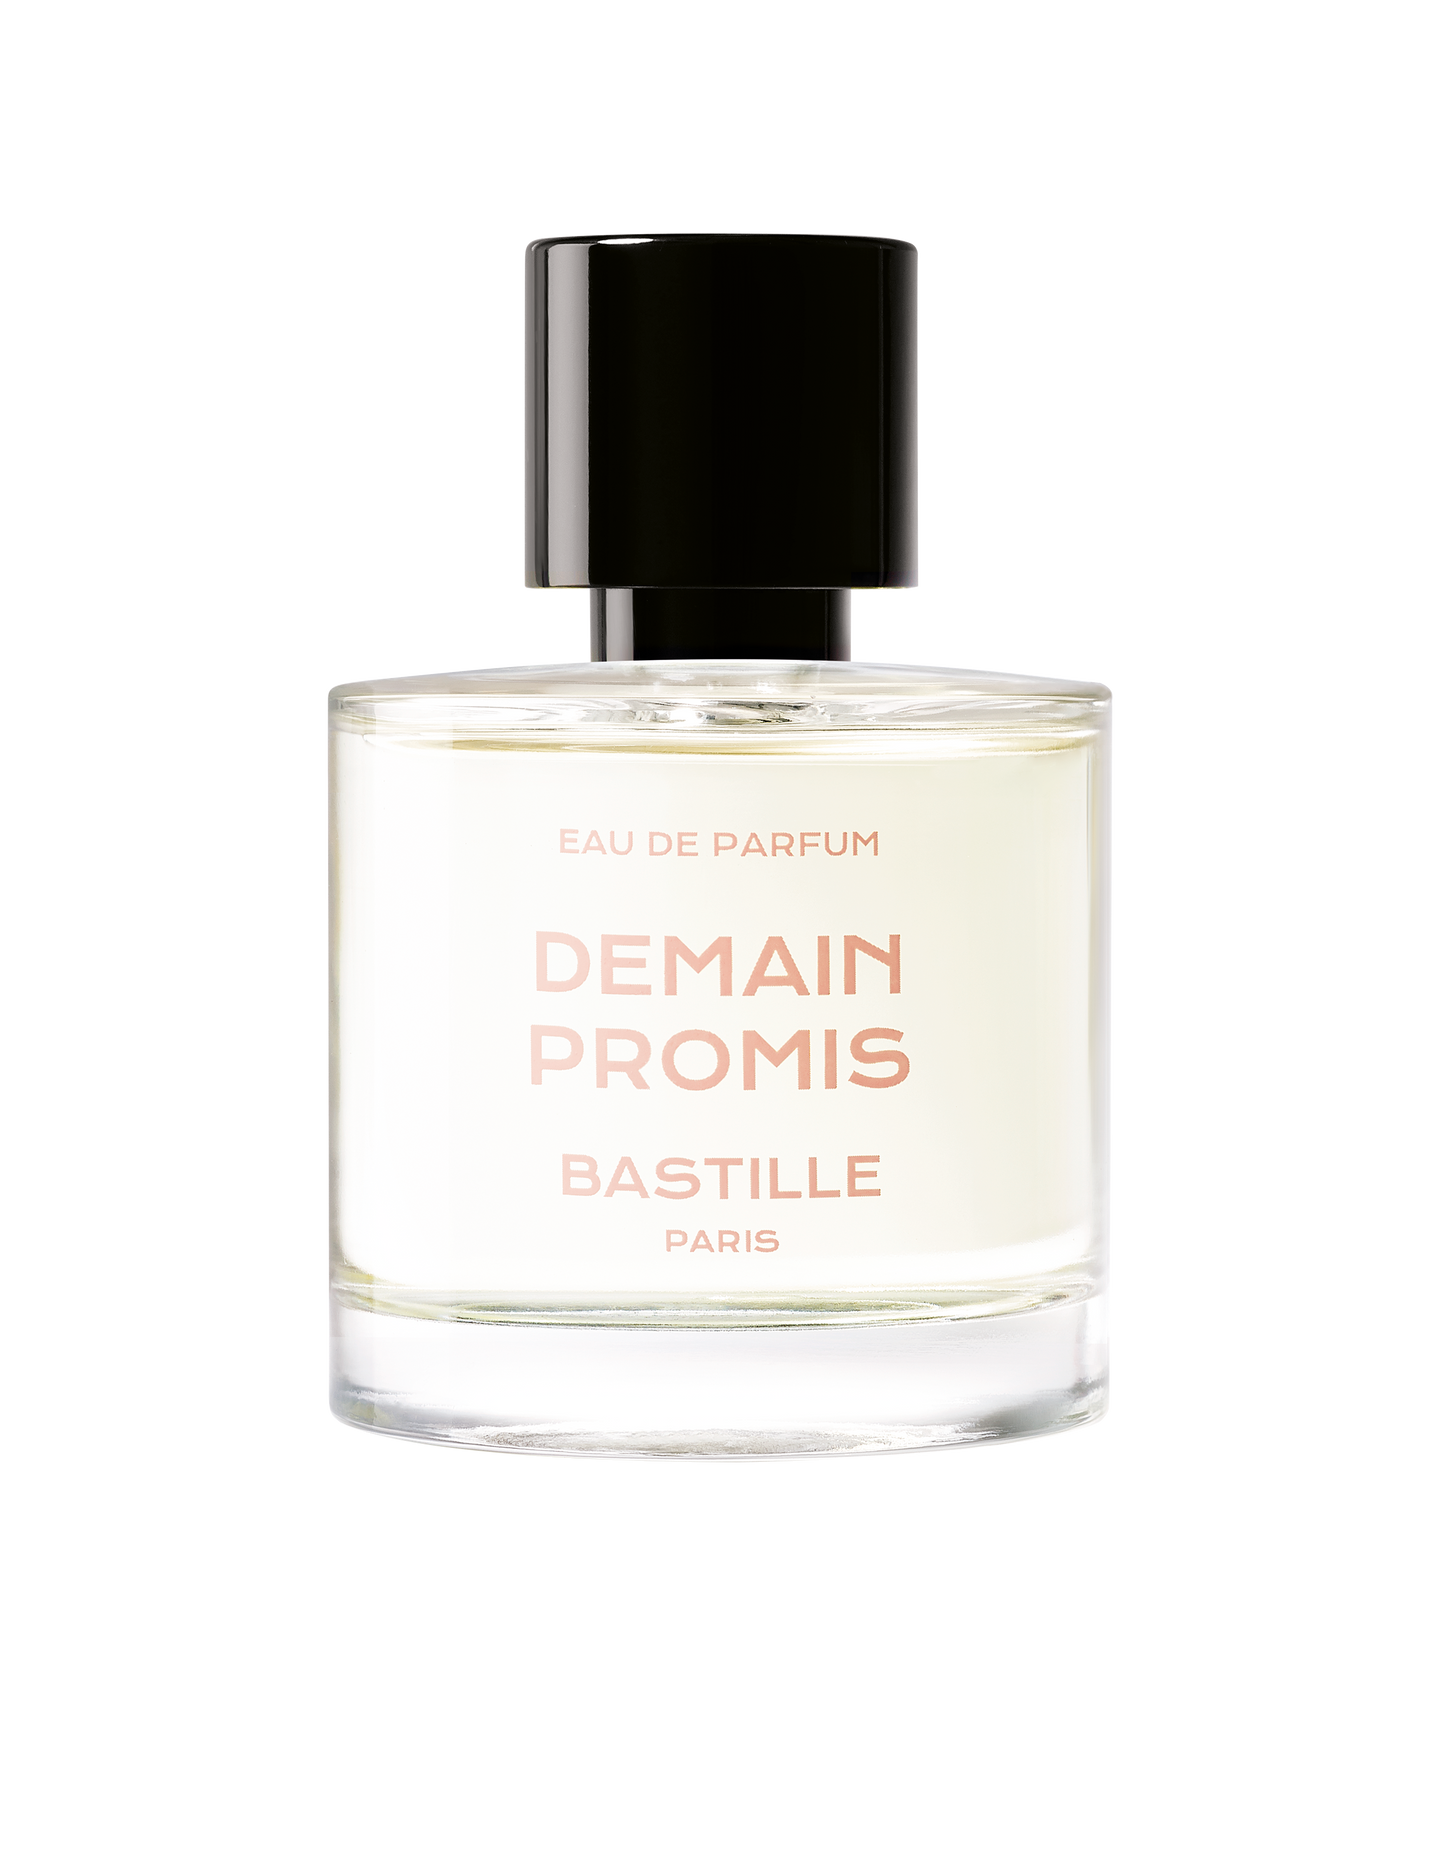 Parfum "Demain promis"